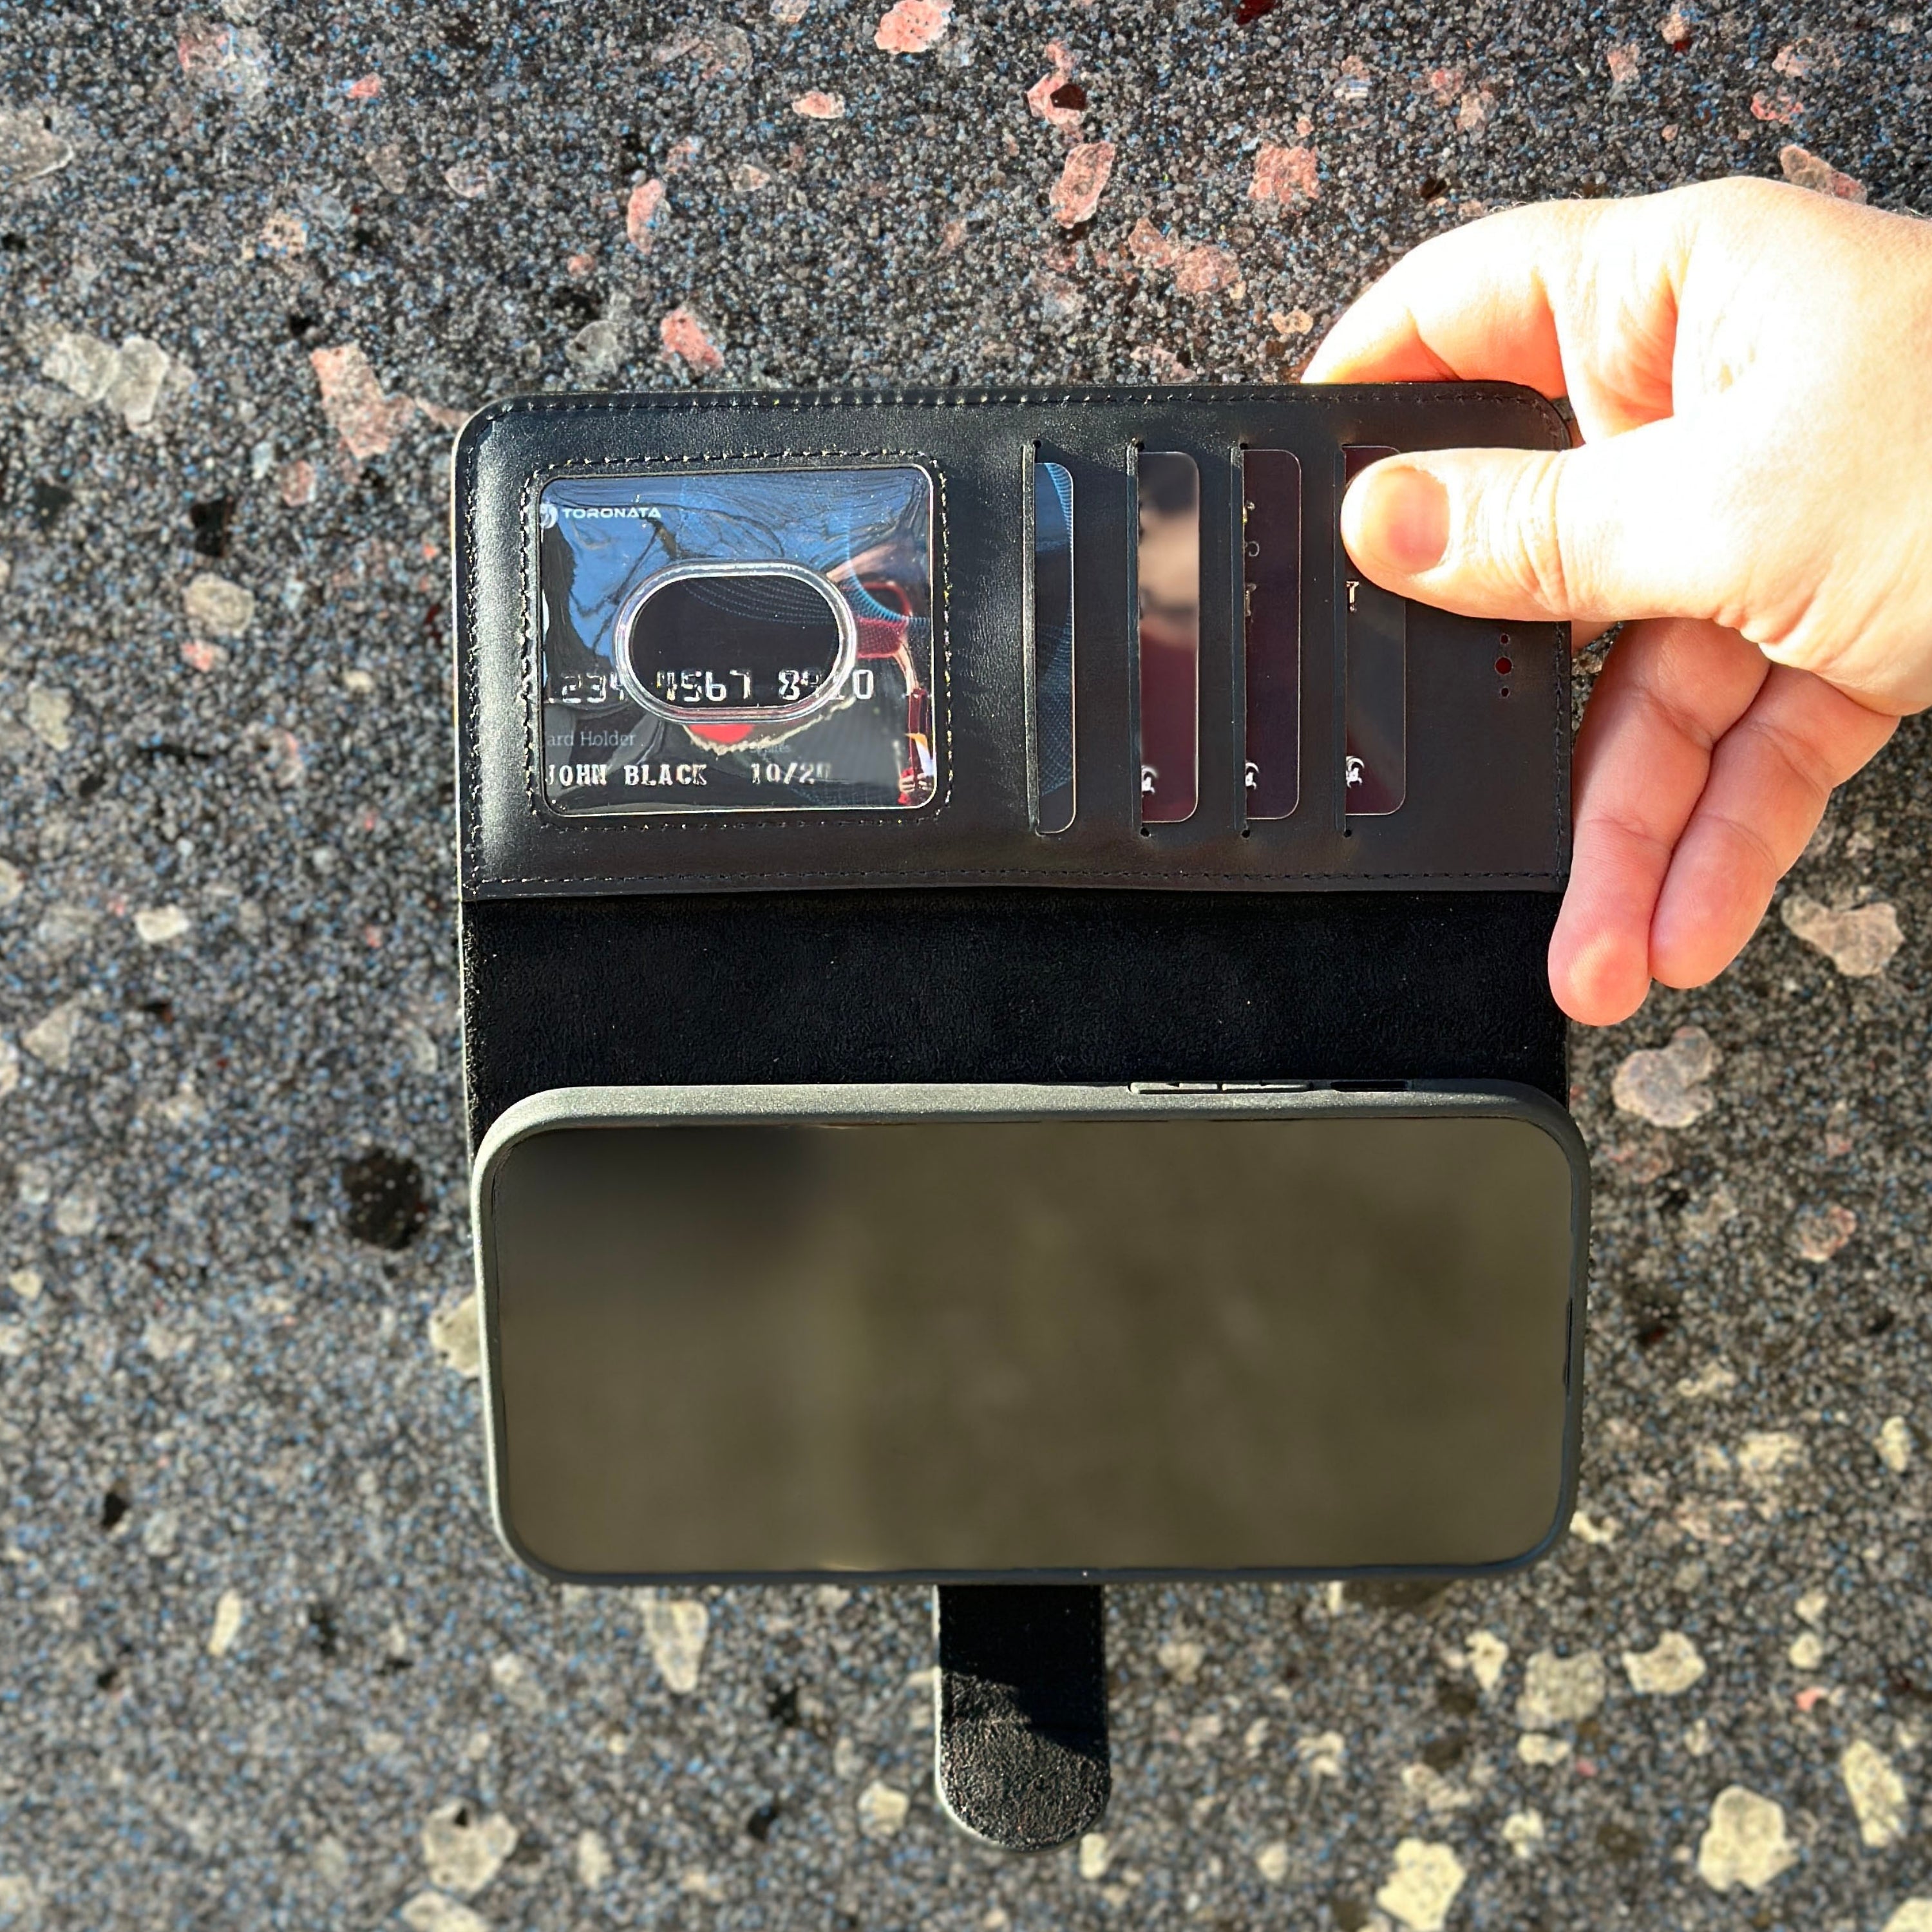 Vegas iPhone 15 Plus Wallet Case | MagSafe-Black---TORONATA